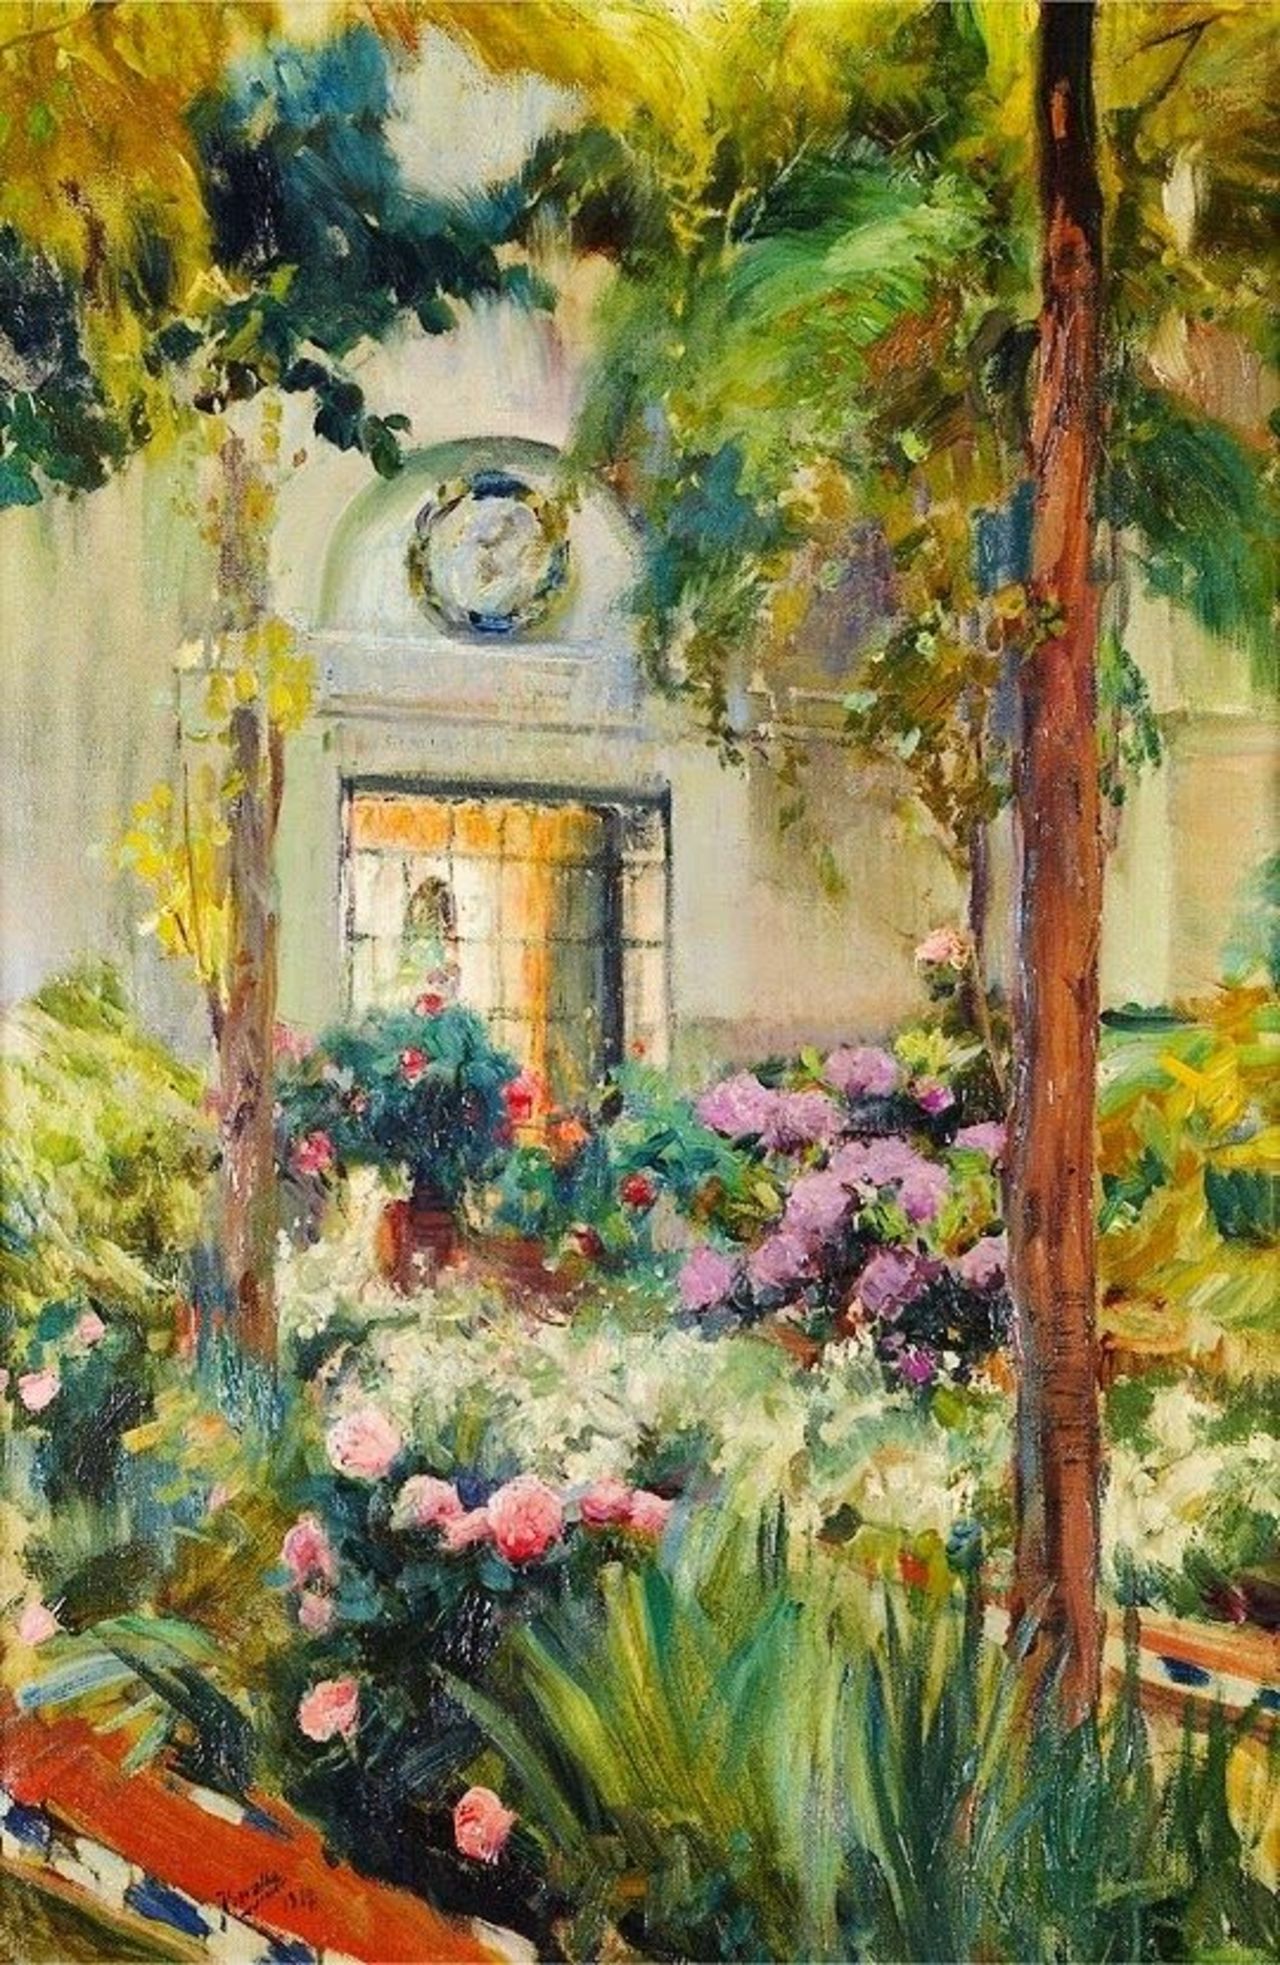 Desde #Artelandia queremos desearos un feliz día con esta obra:#Sorolla El patio de la casa de Sorolla (1917) https://t.co/A4tTjVejuC